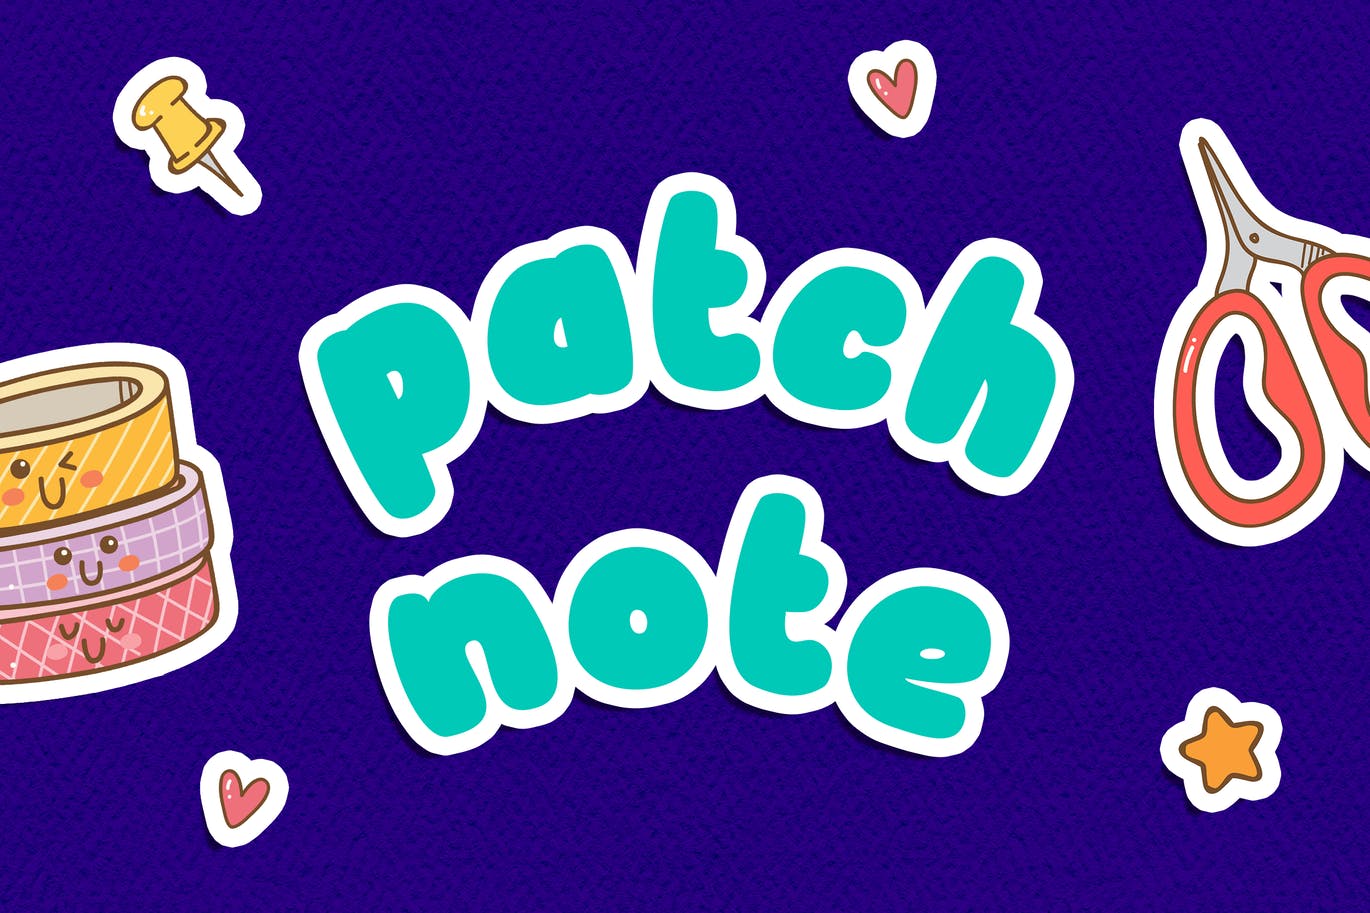 儿童书籍无衬线字体素材 Patch Note – Kids Font 设计素材 第1张